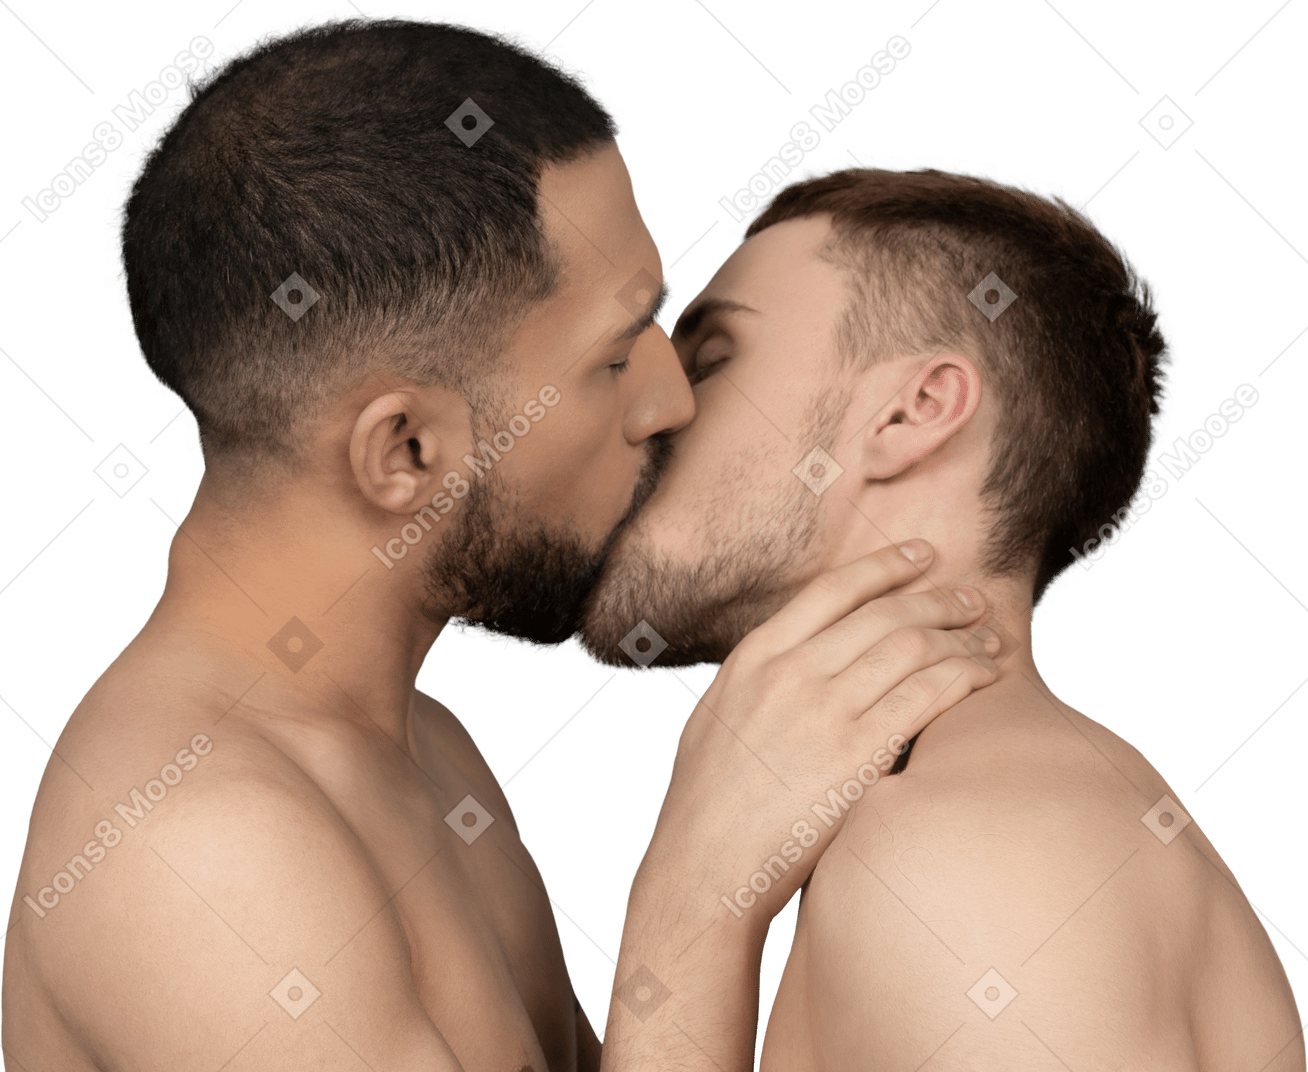 Nahaufnahme von zwei kaukasischen männern ohne hemd, die sich sanft küssen